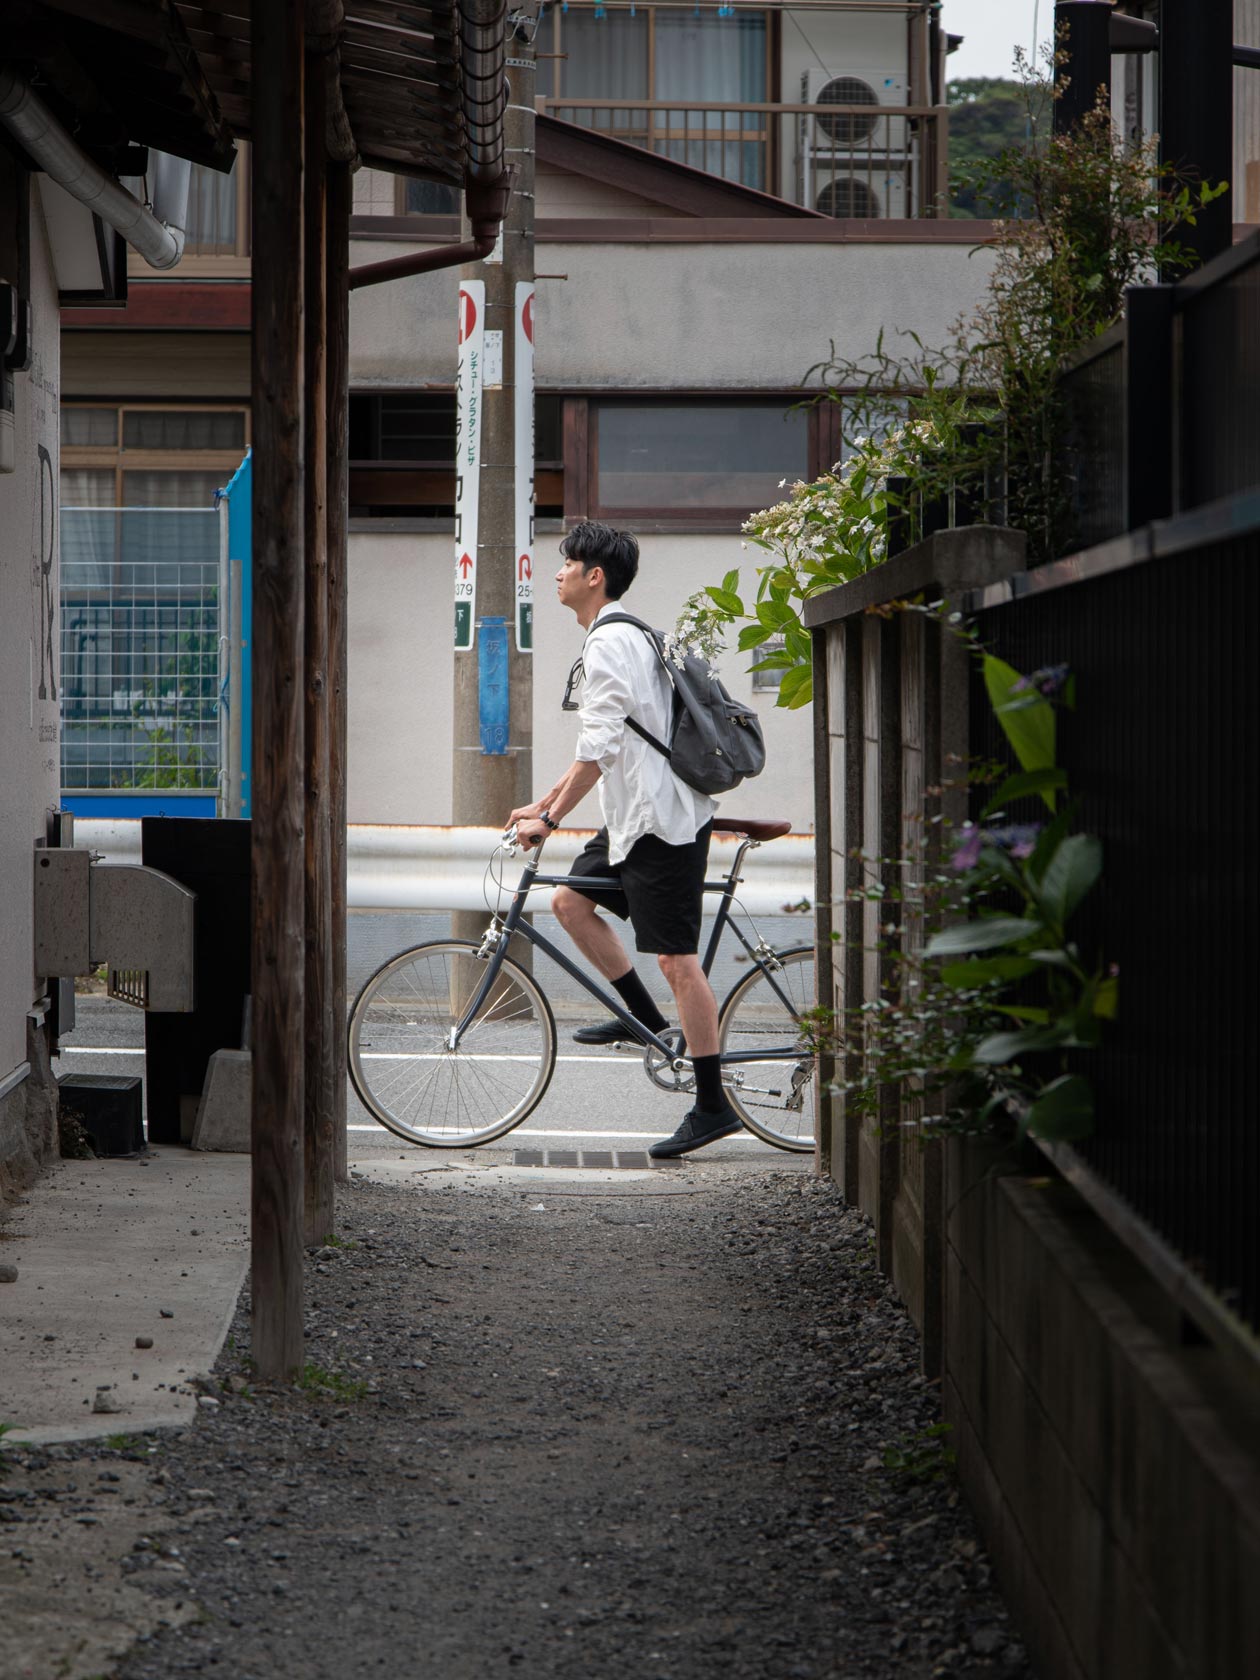 About Tokyo Bike